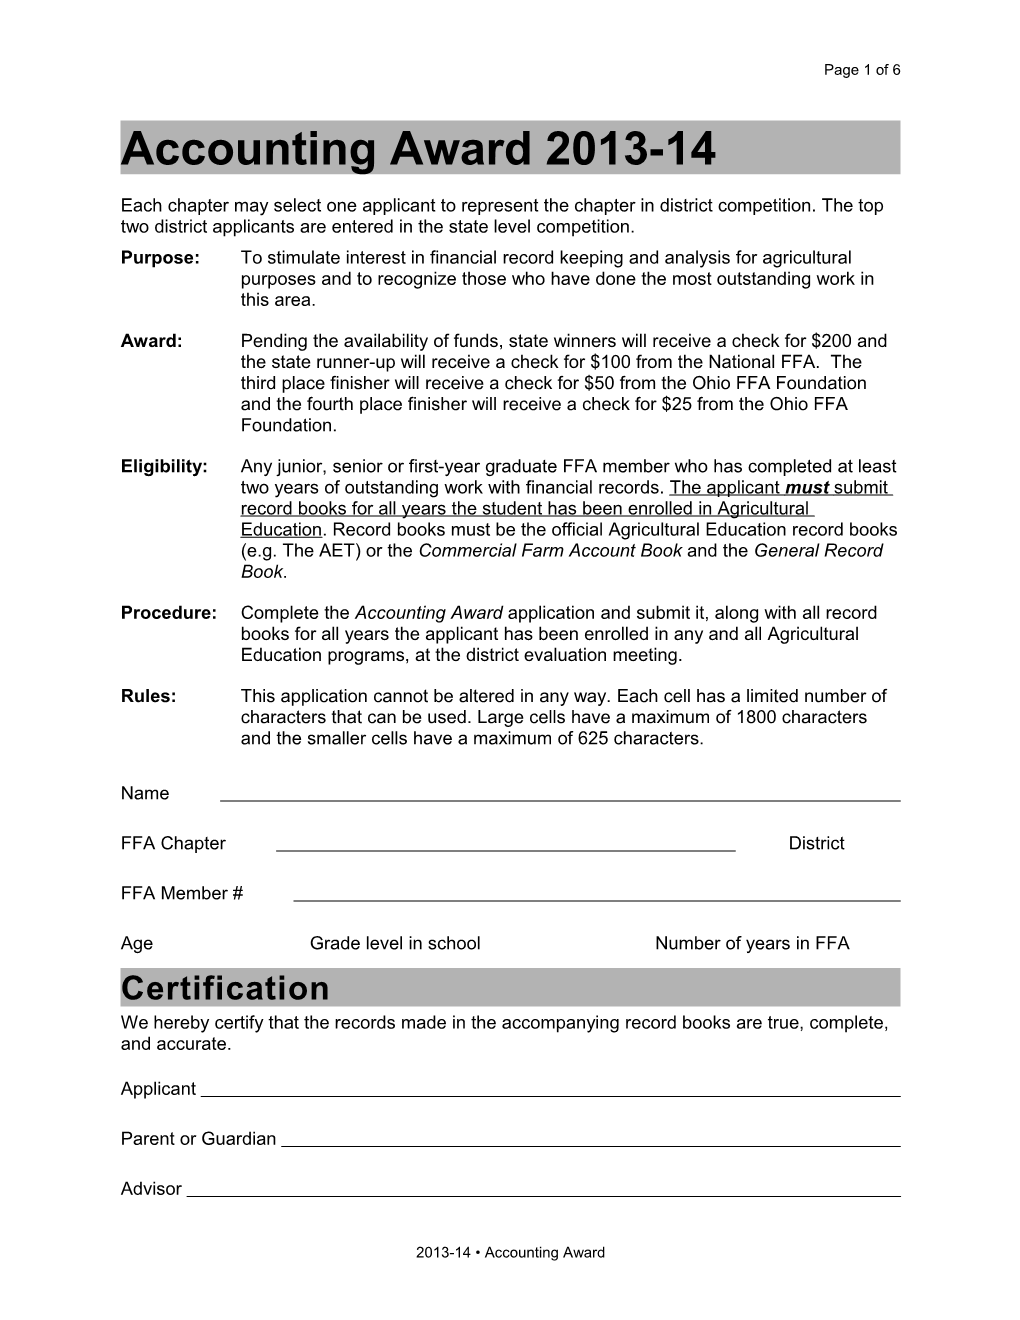 Accounting Award 2013-14